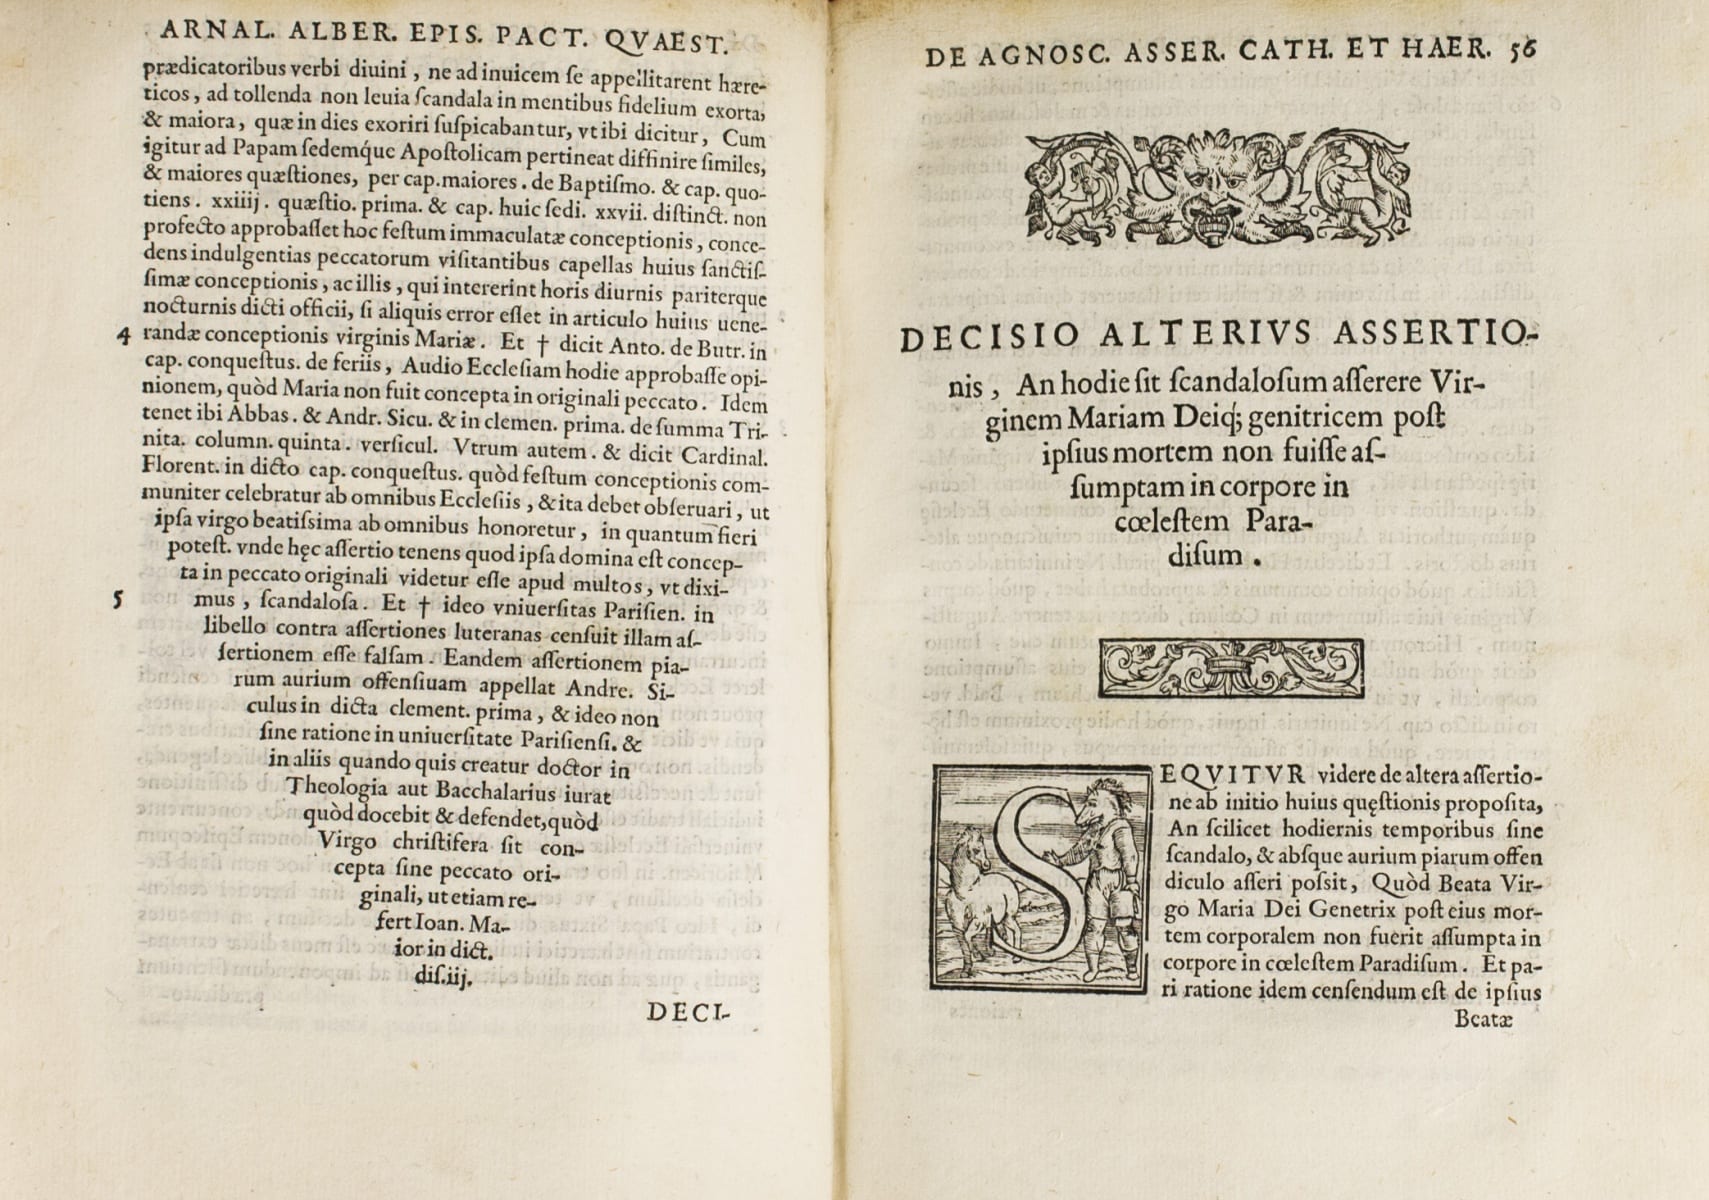 View full sized image for: Ugolini, Zanchino. Tractatus nouus aureus et solemnis de haereticis...Venetijs: Ad Candentis Salamandrae Insigne, 1571.